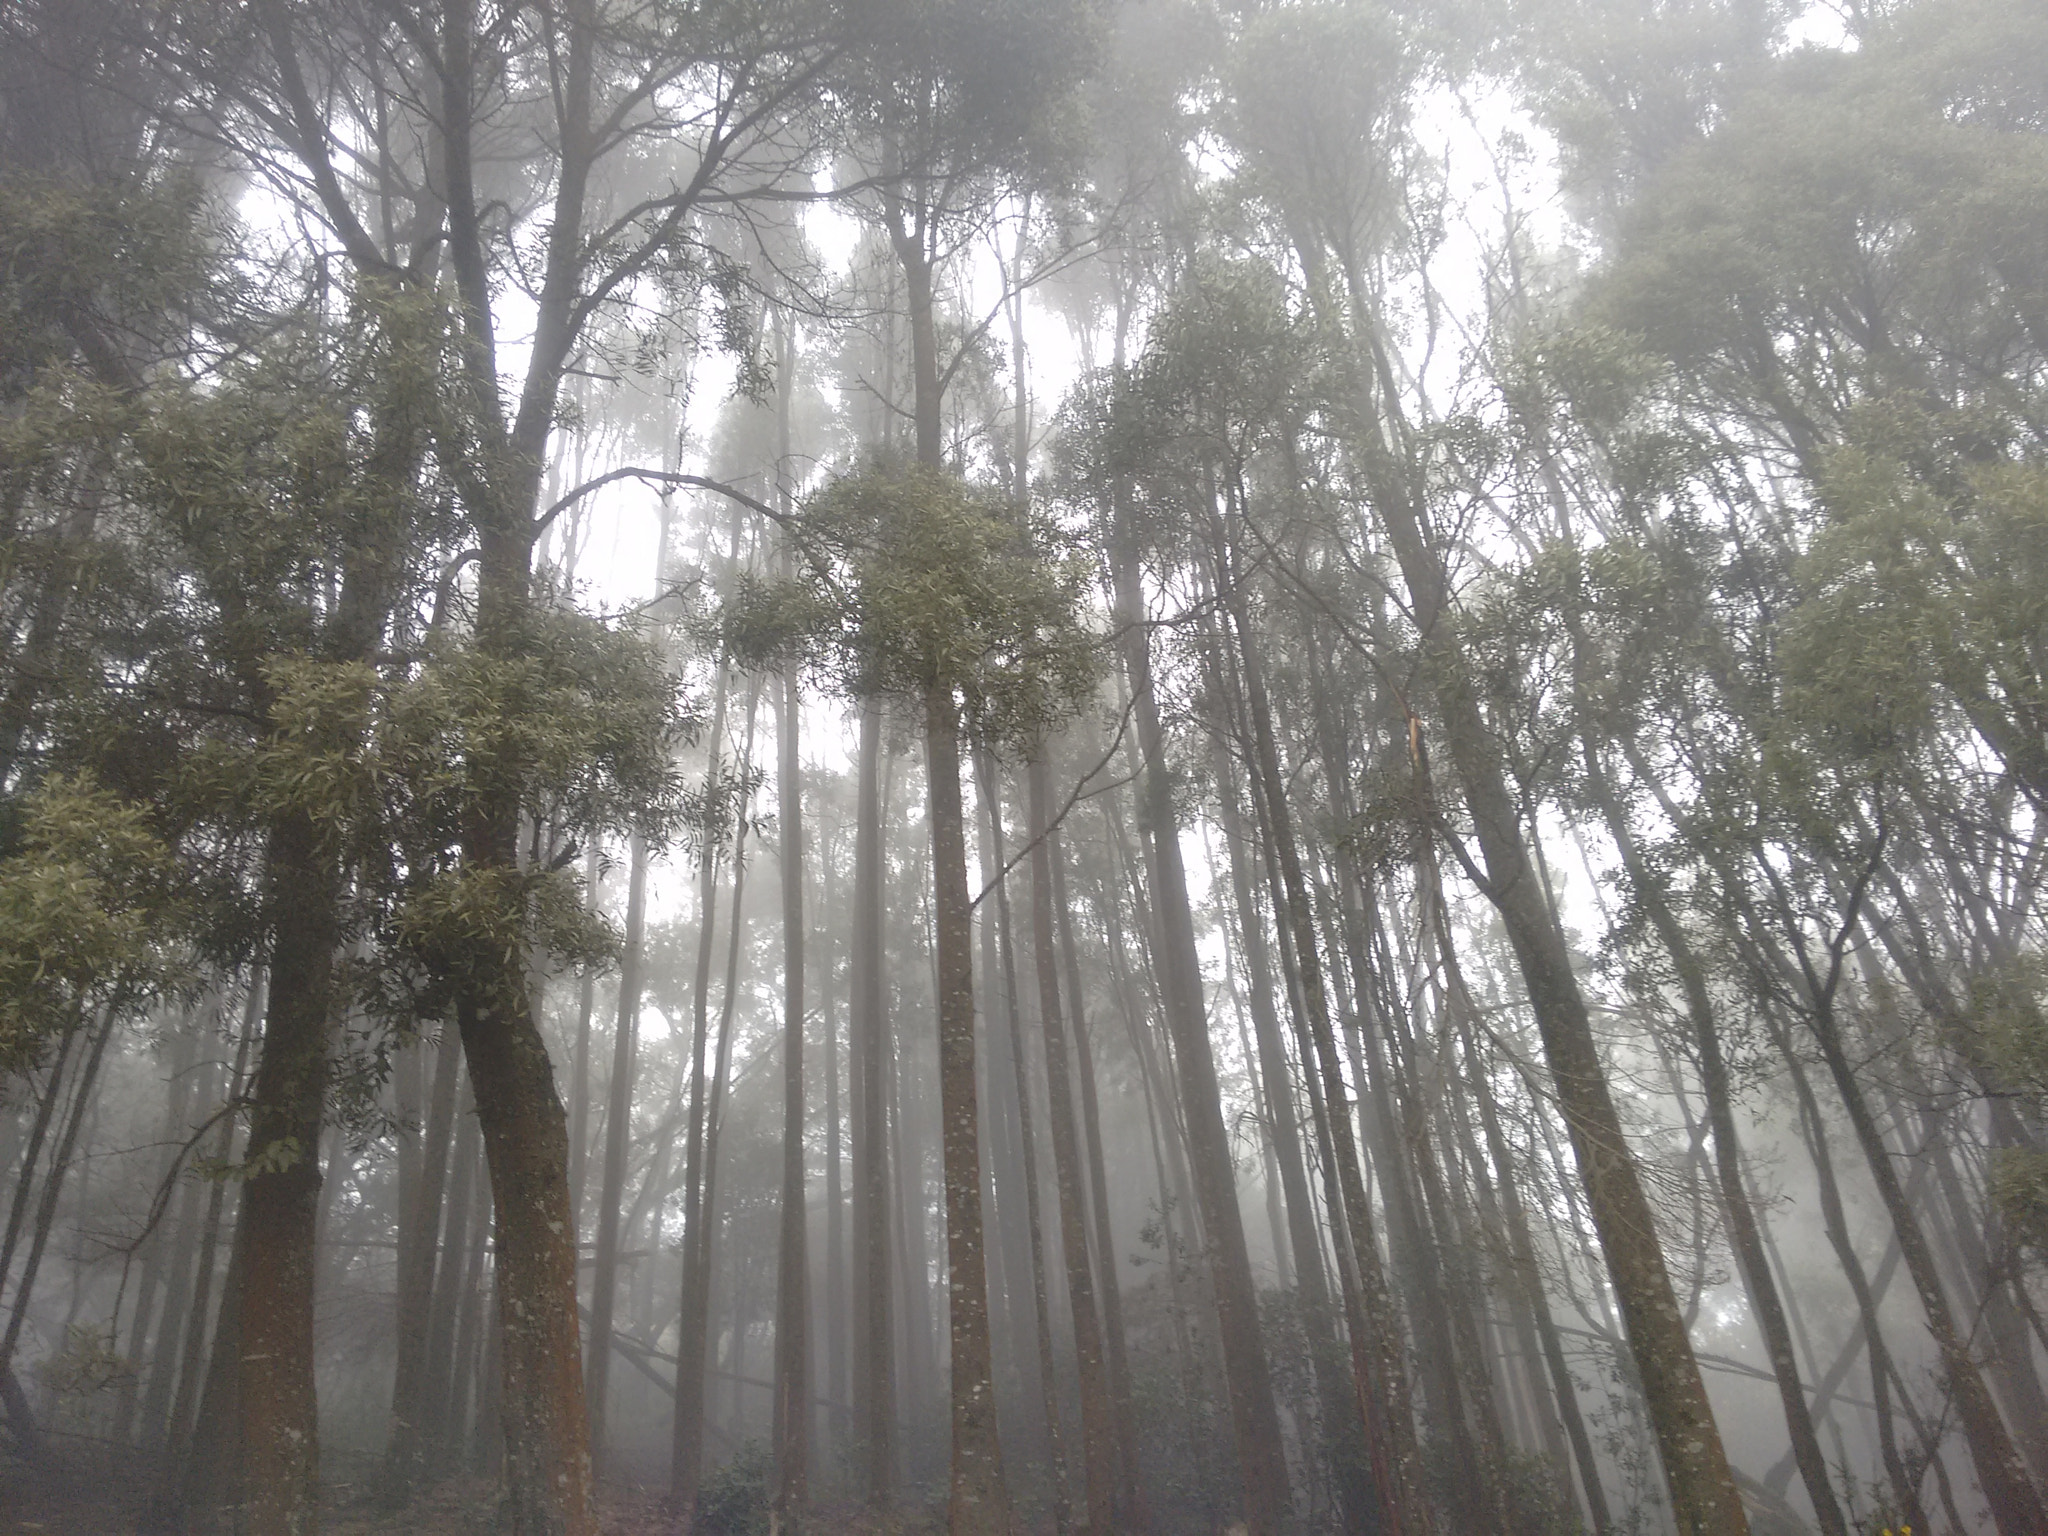 Motorola Moto G 2014 sample photo. Misty woods photography